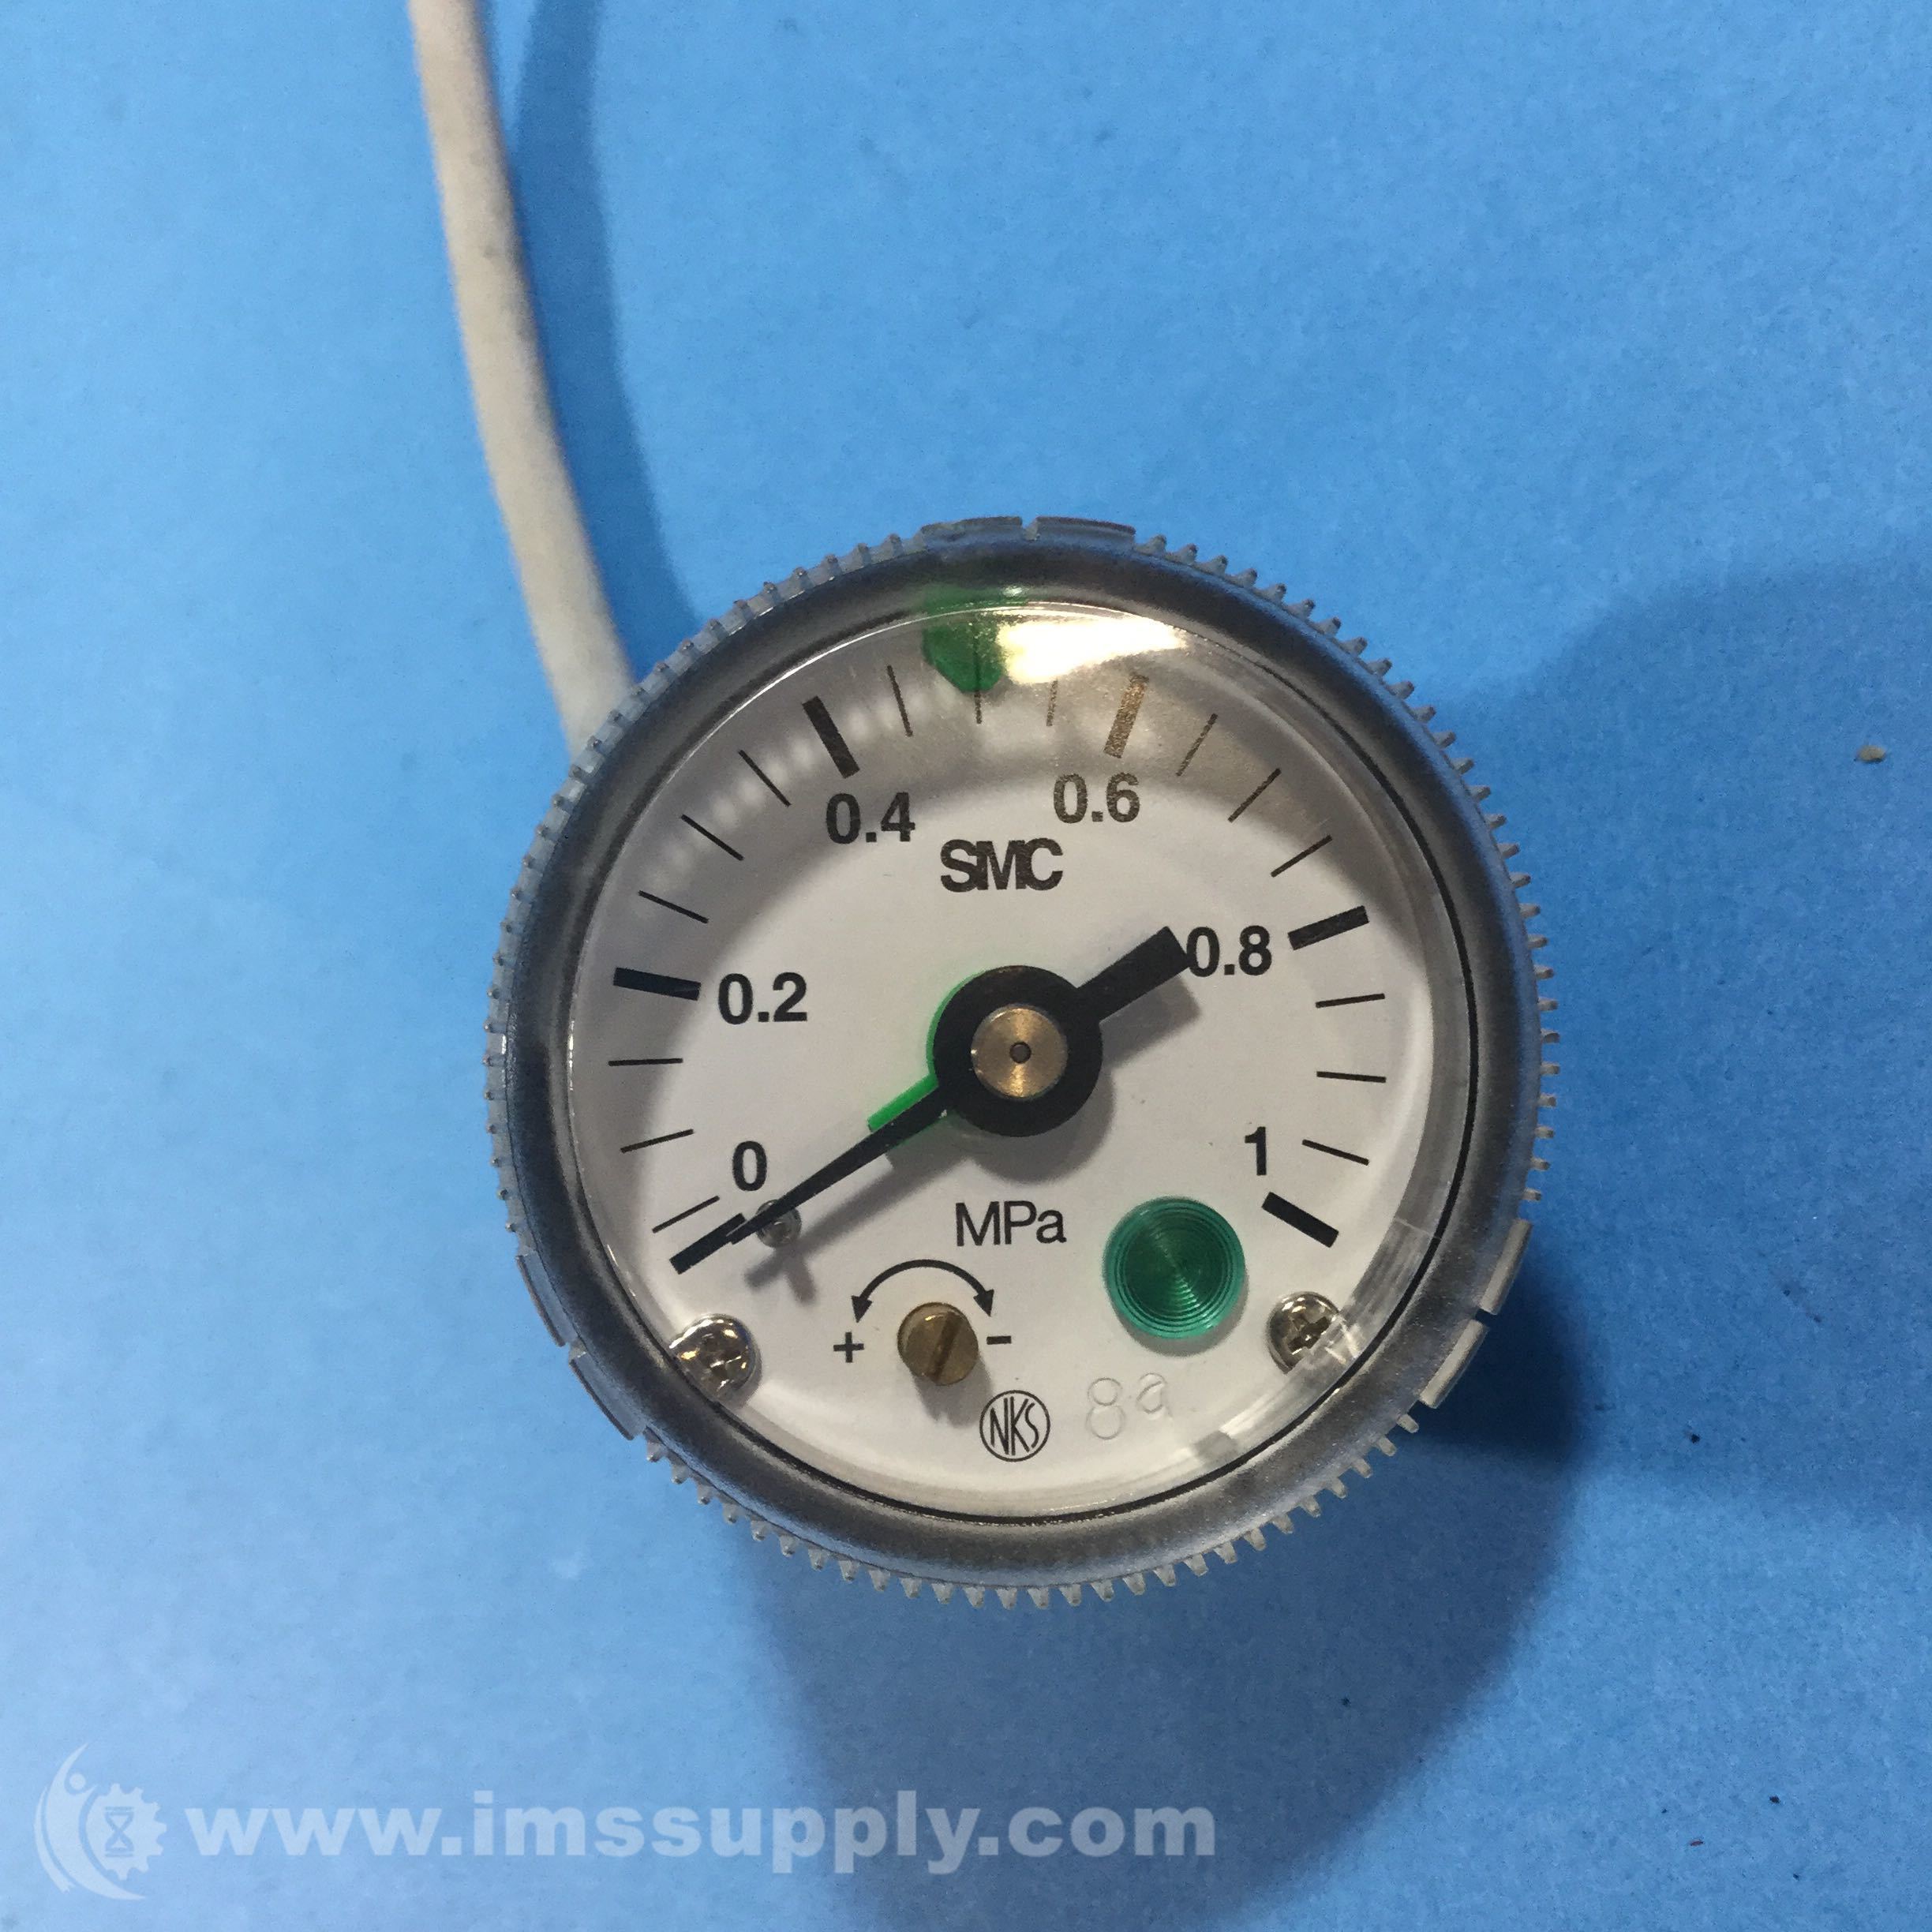 Details about   1pcs new SMC pressure gauge GP46-10-02L5-SC-2 